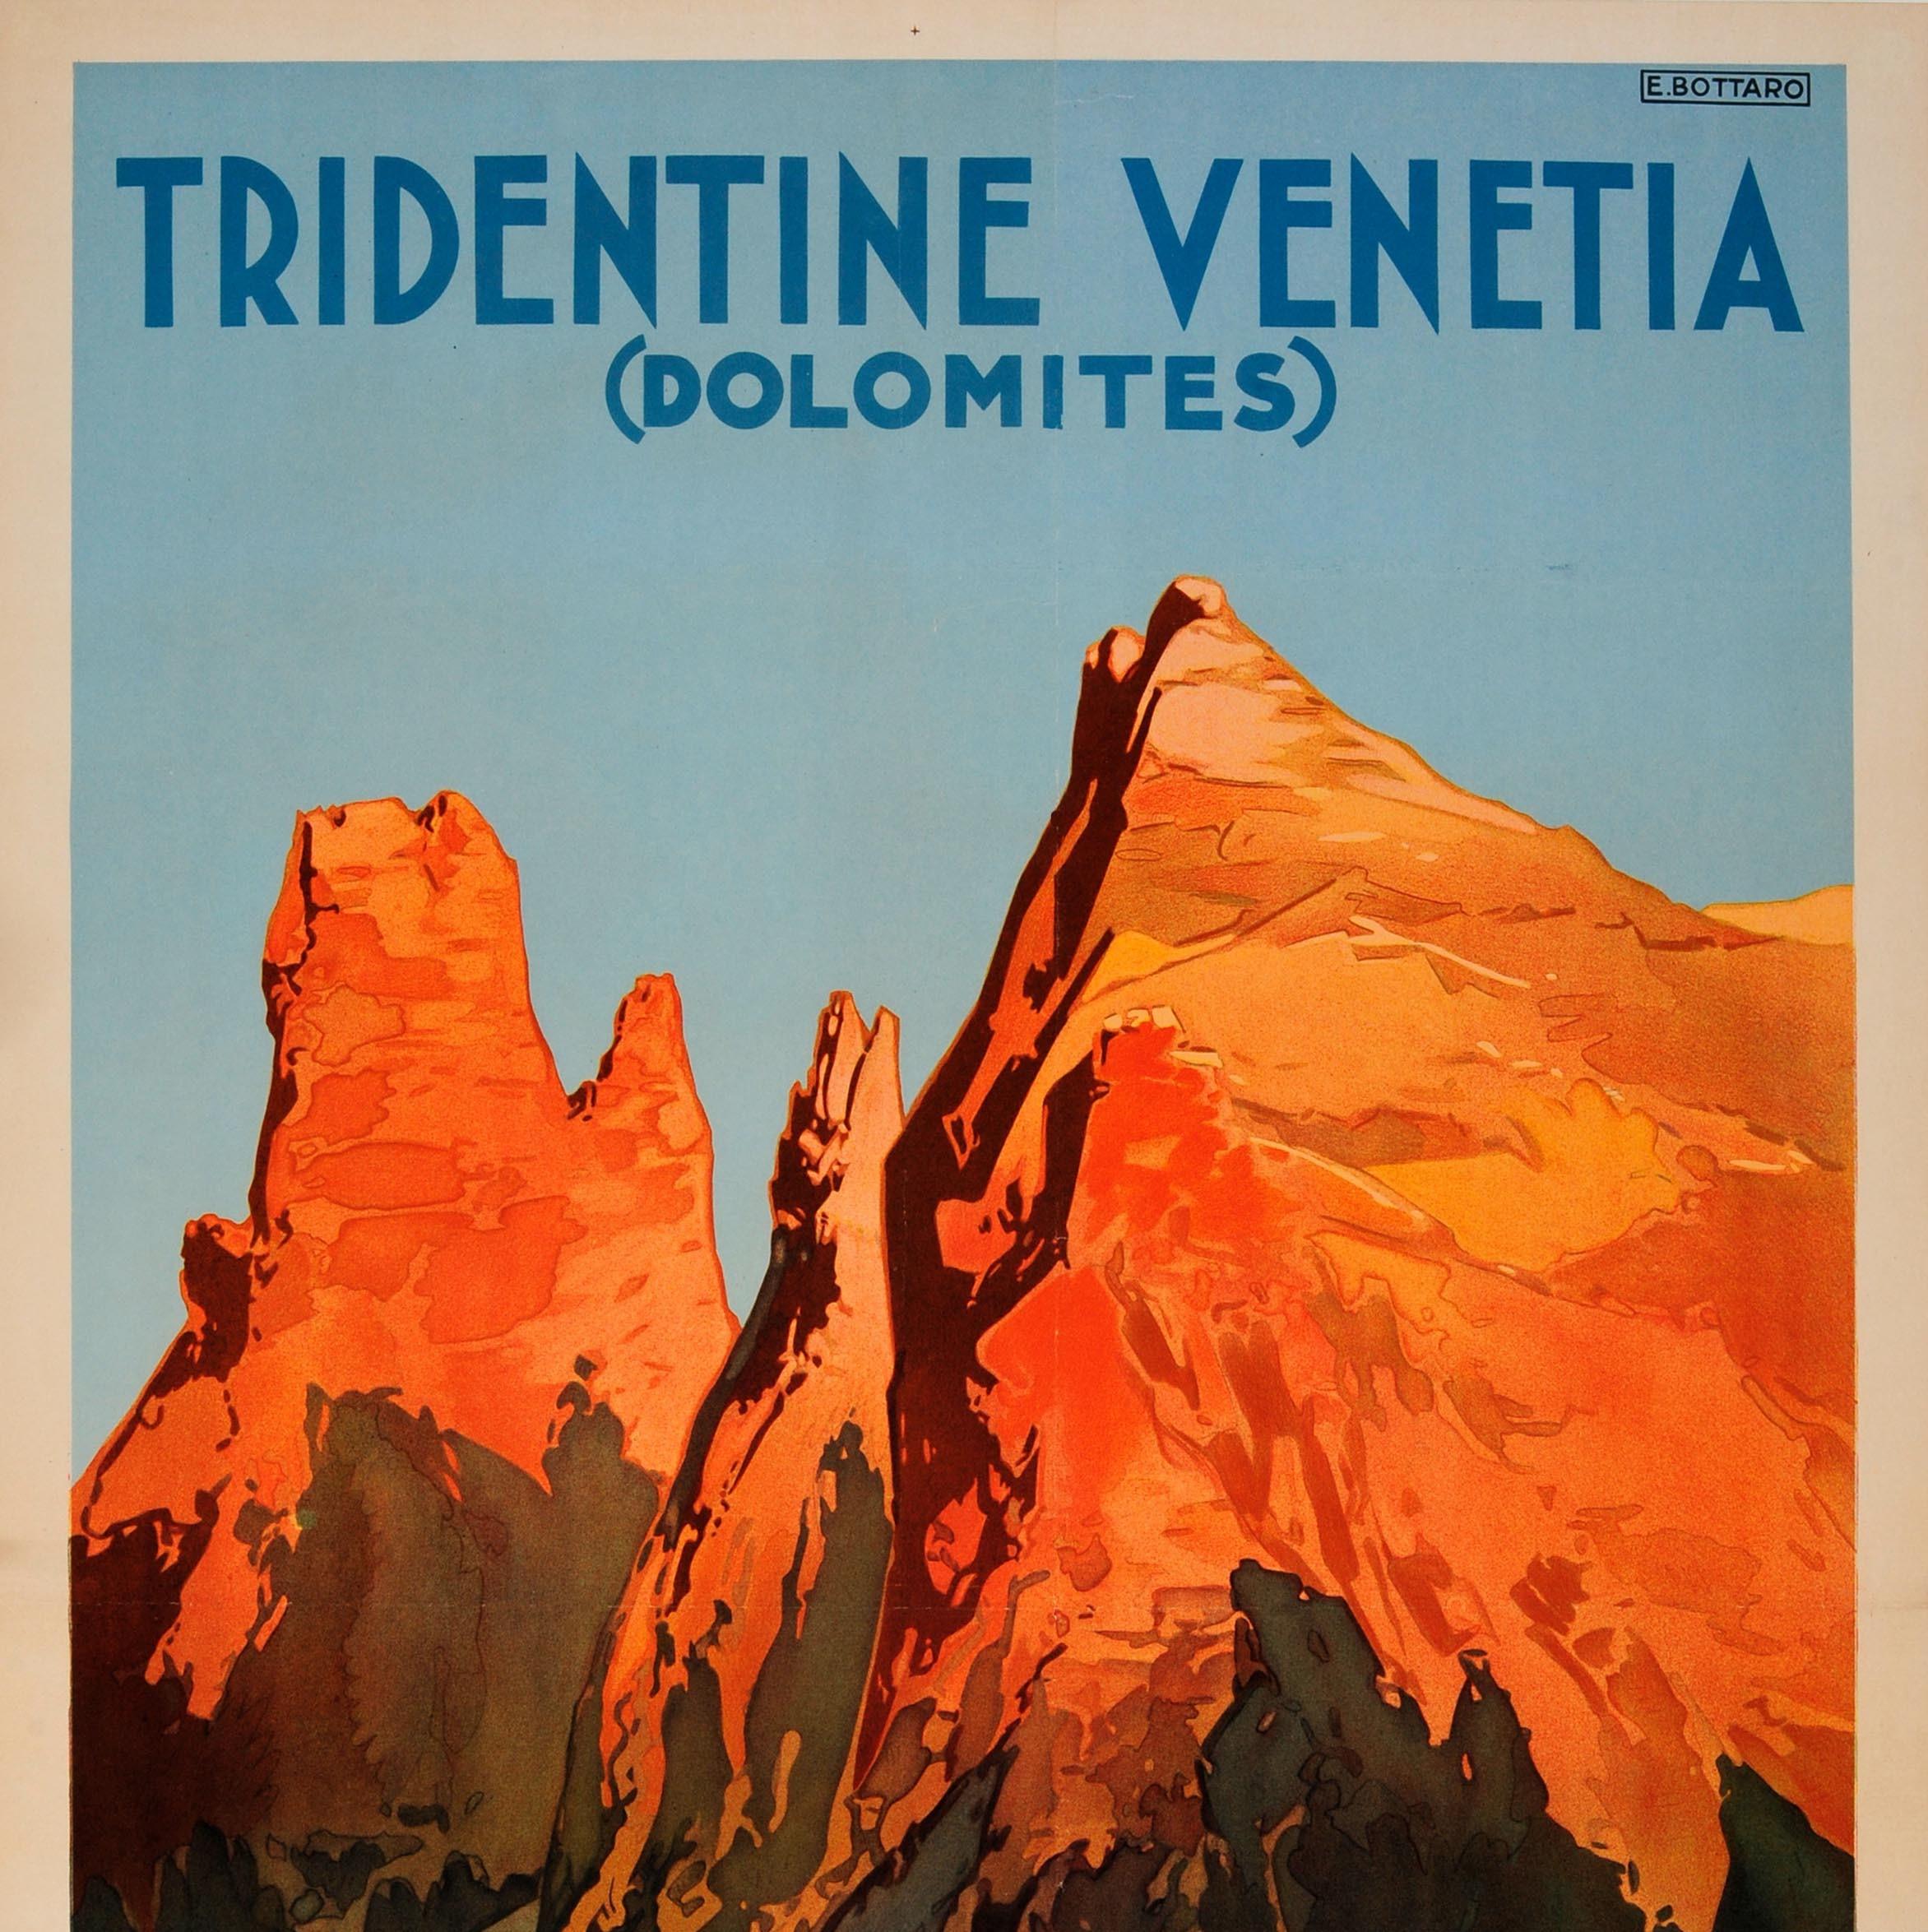 Original Antique Poster Tridentine Venetia Dolomites Alps Mountains Italy Travel - Print by Bottaro